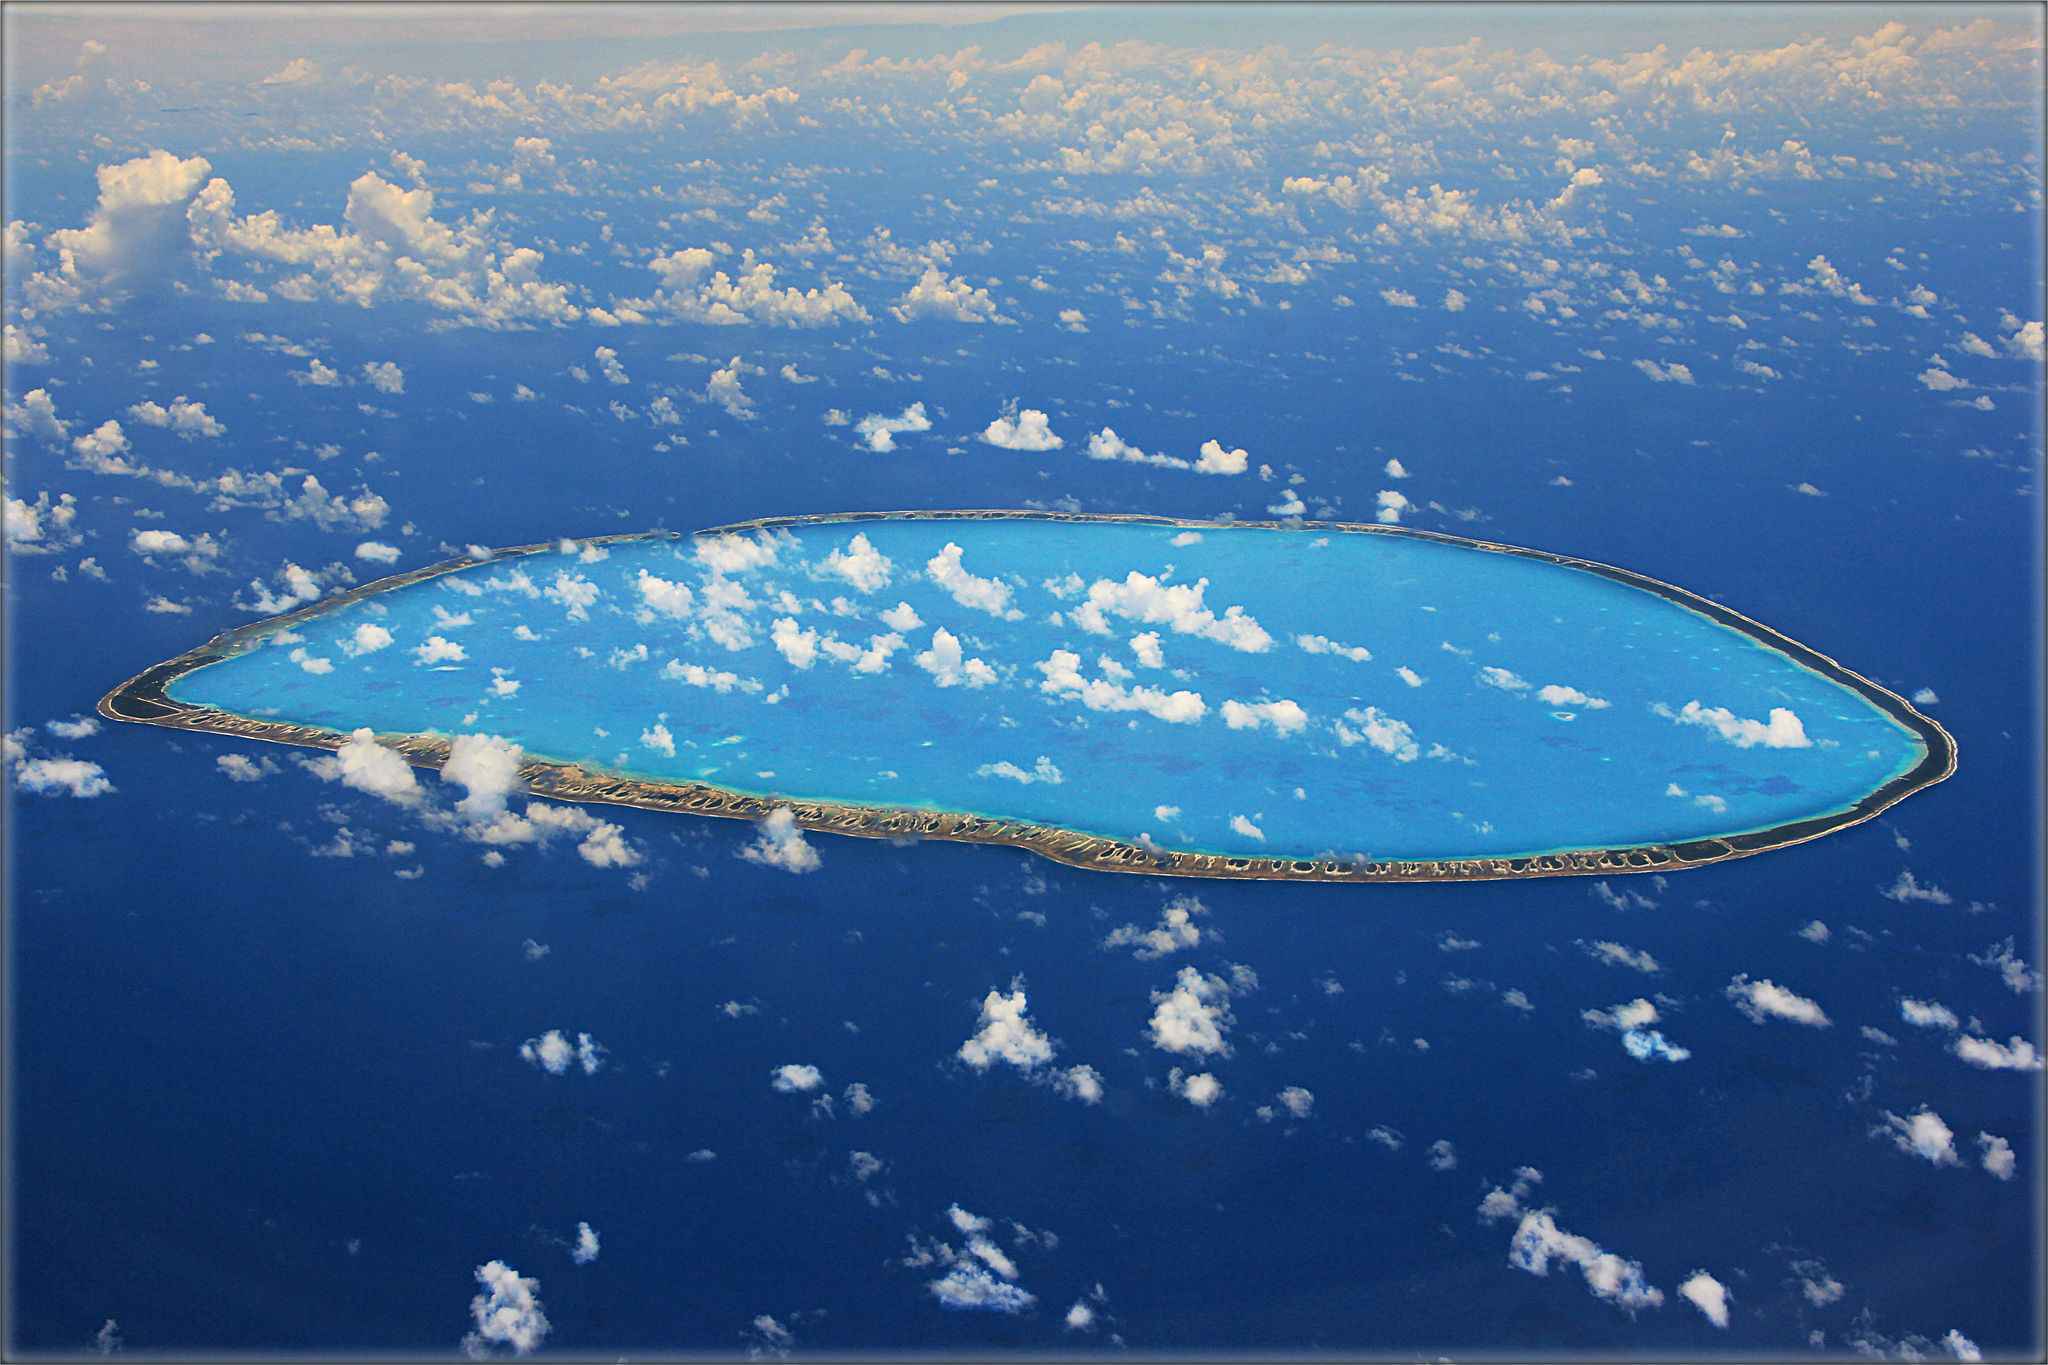 tikehau atoll